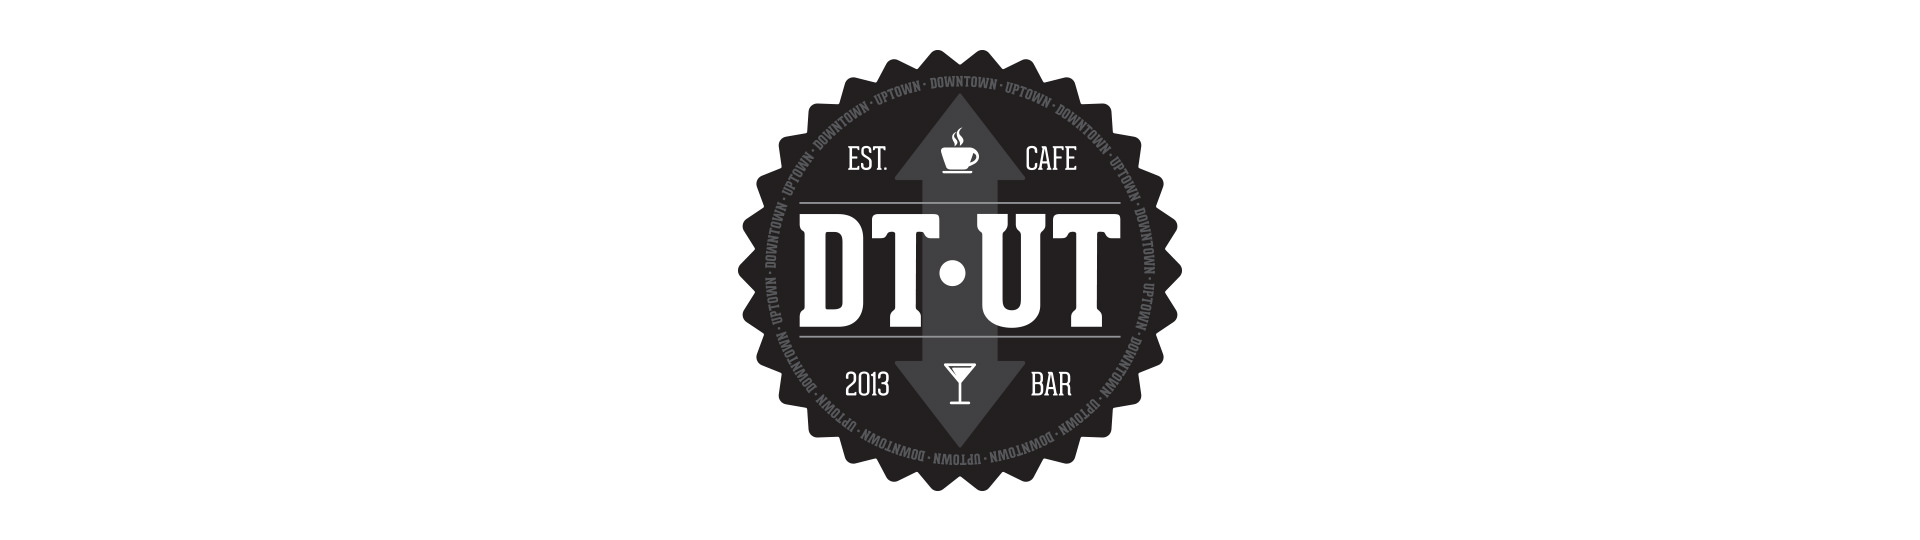 DT-UT logo